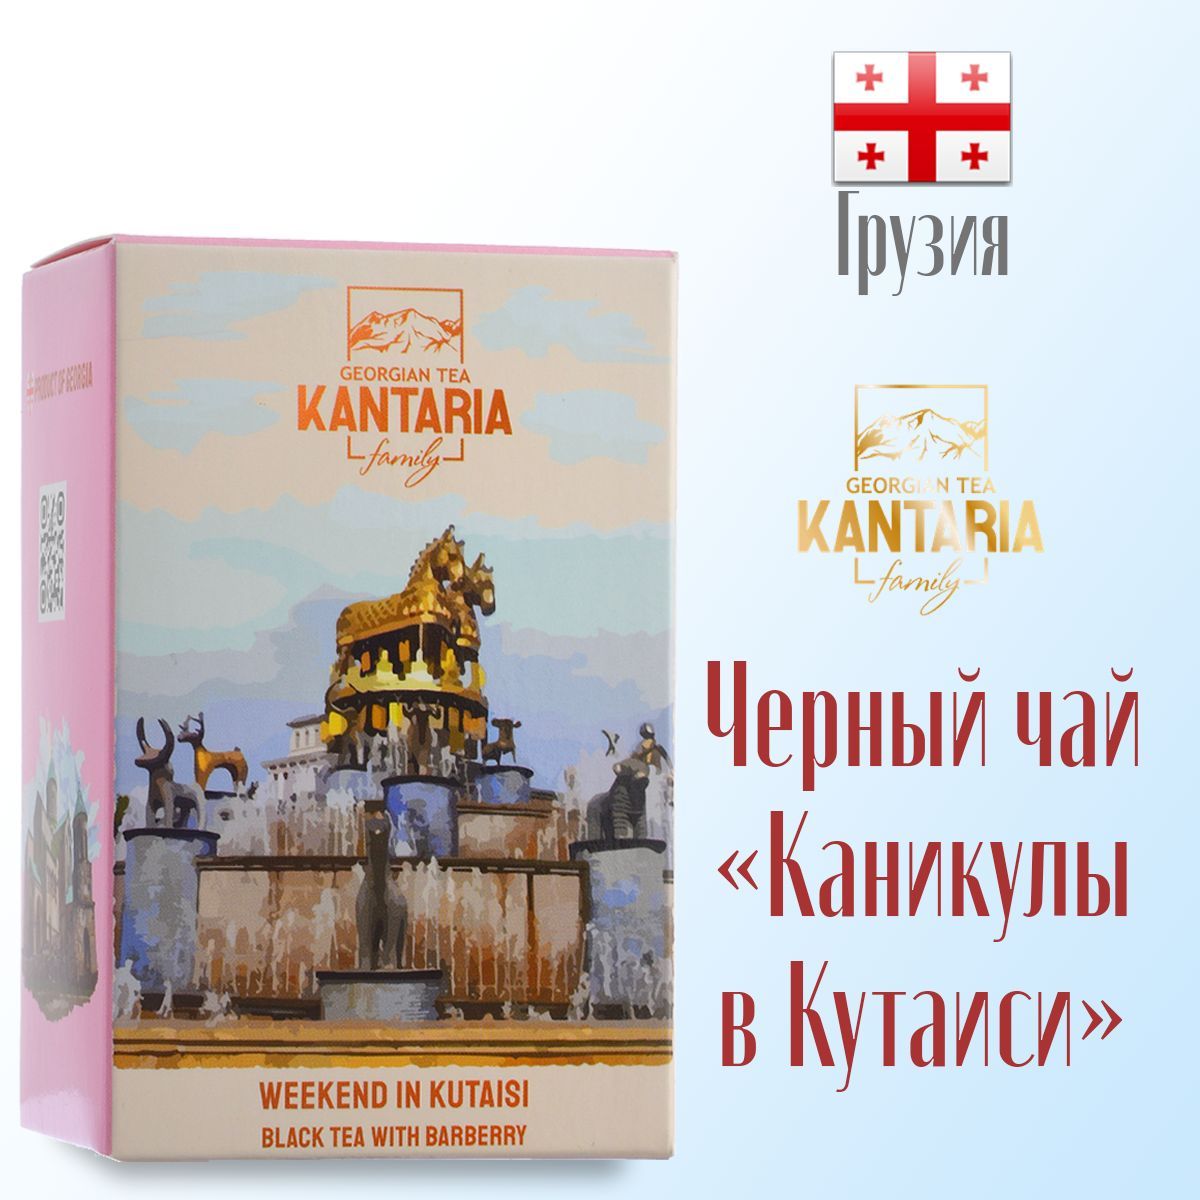 Чай Kantaria грузинский черный крупнолистовой Каникулы в Кутаиси барбарис, 50 г